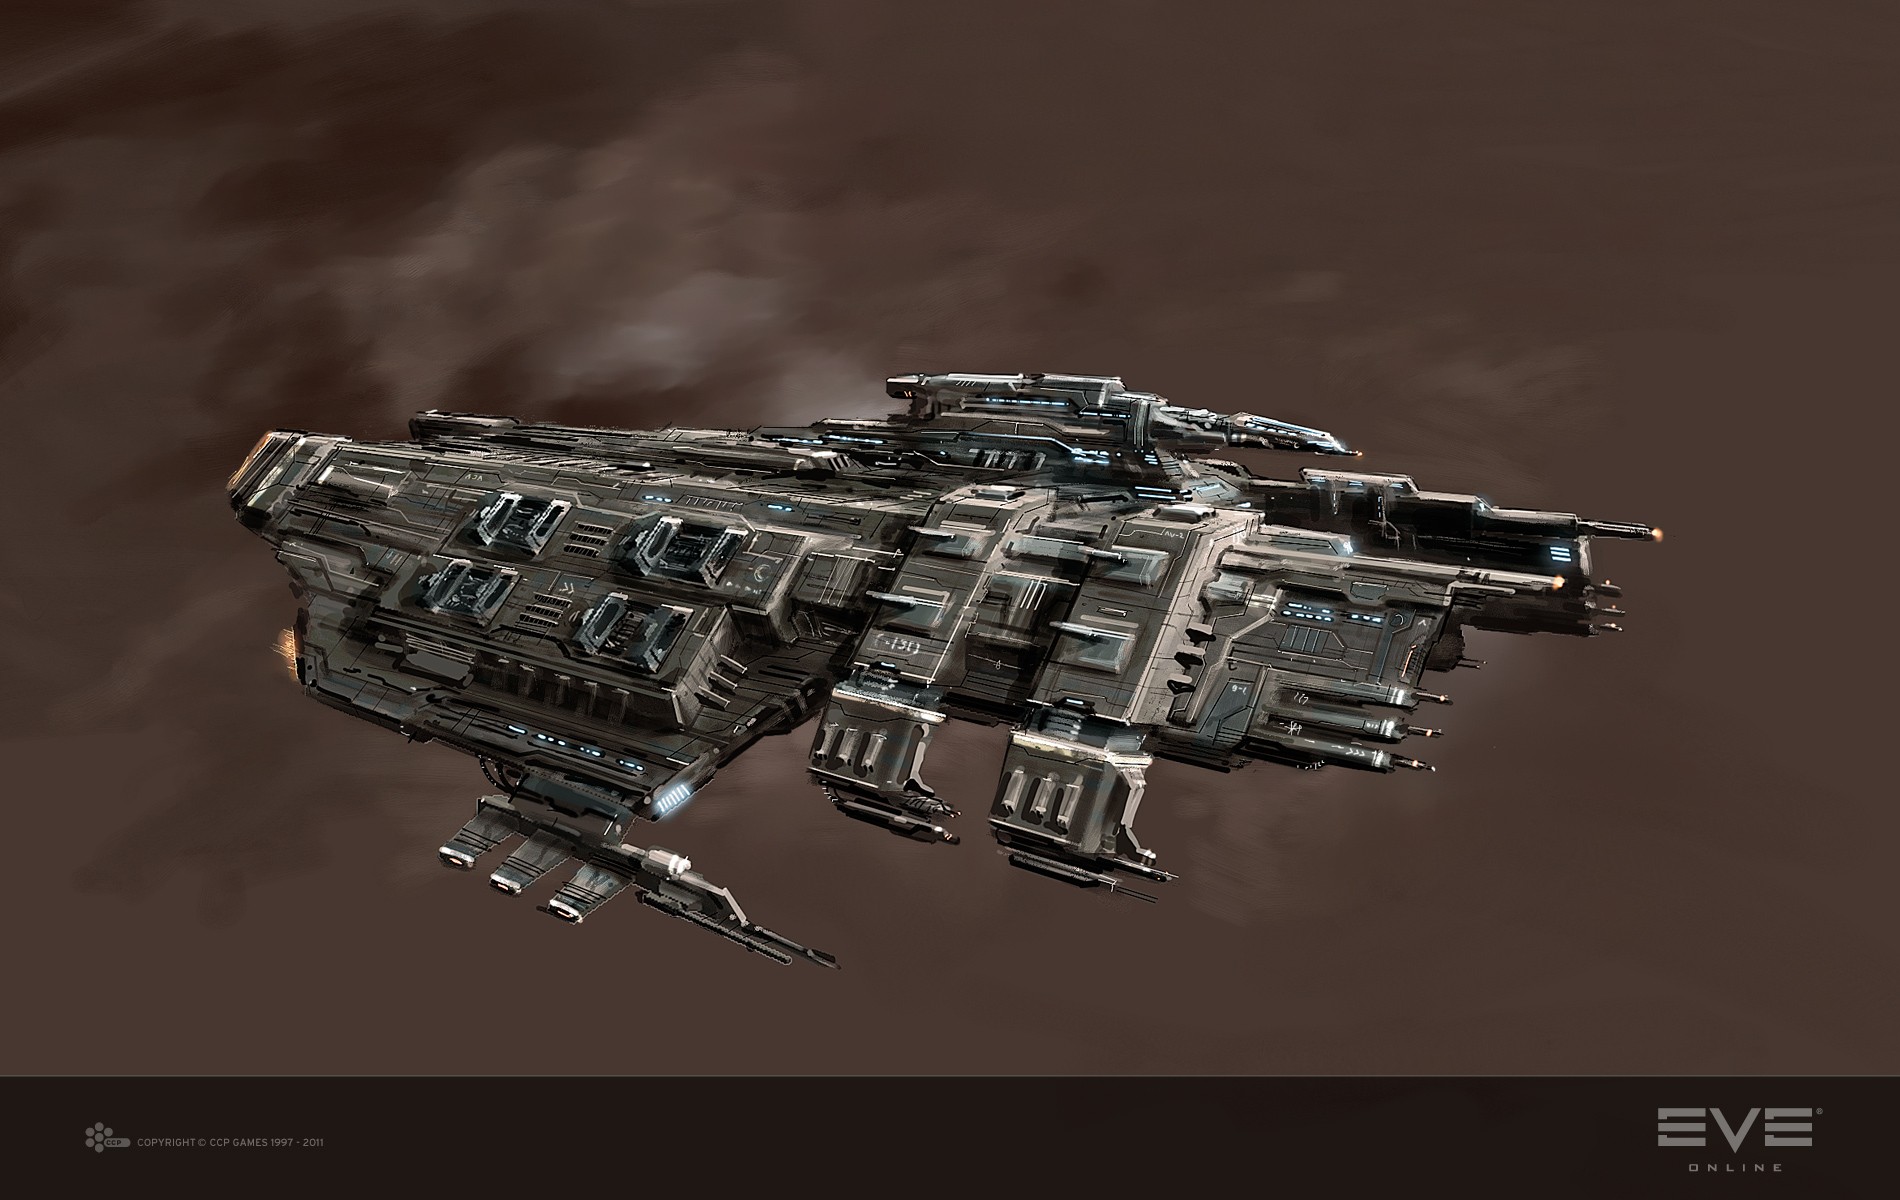 General 1900x1200 EVE Online artwork spaceship Caldari science fiction PC gaming